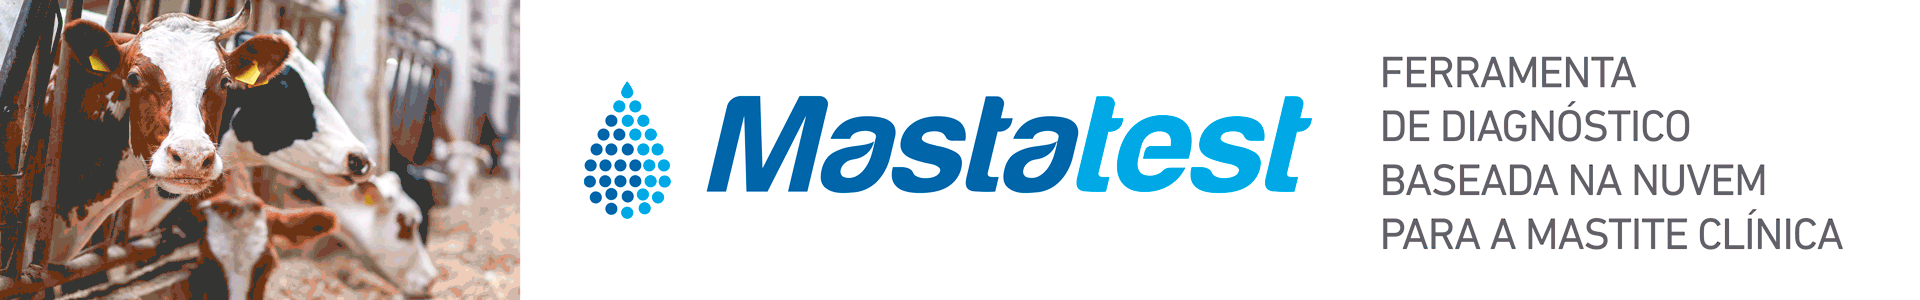 banner mastatest